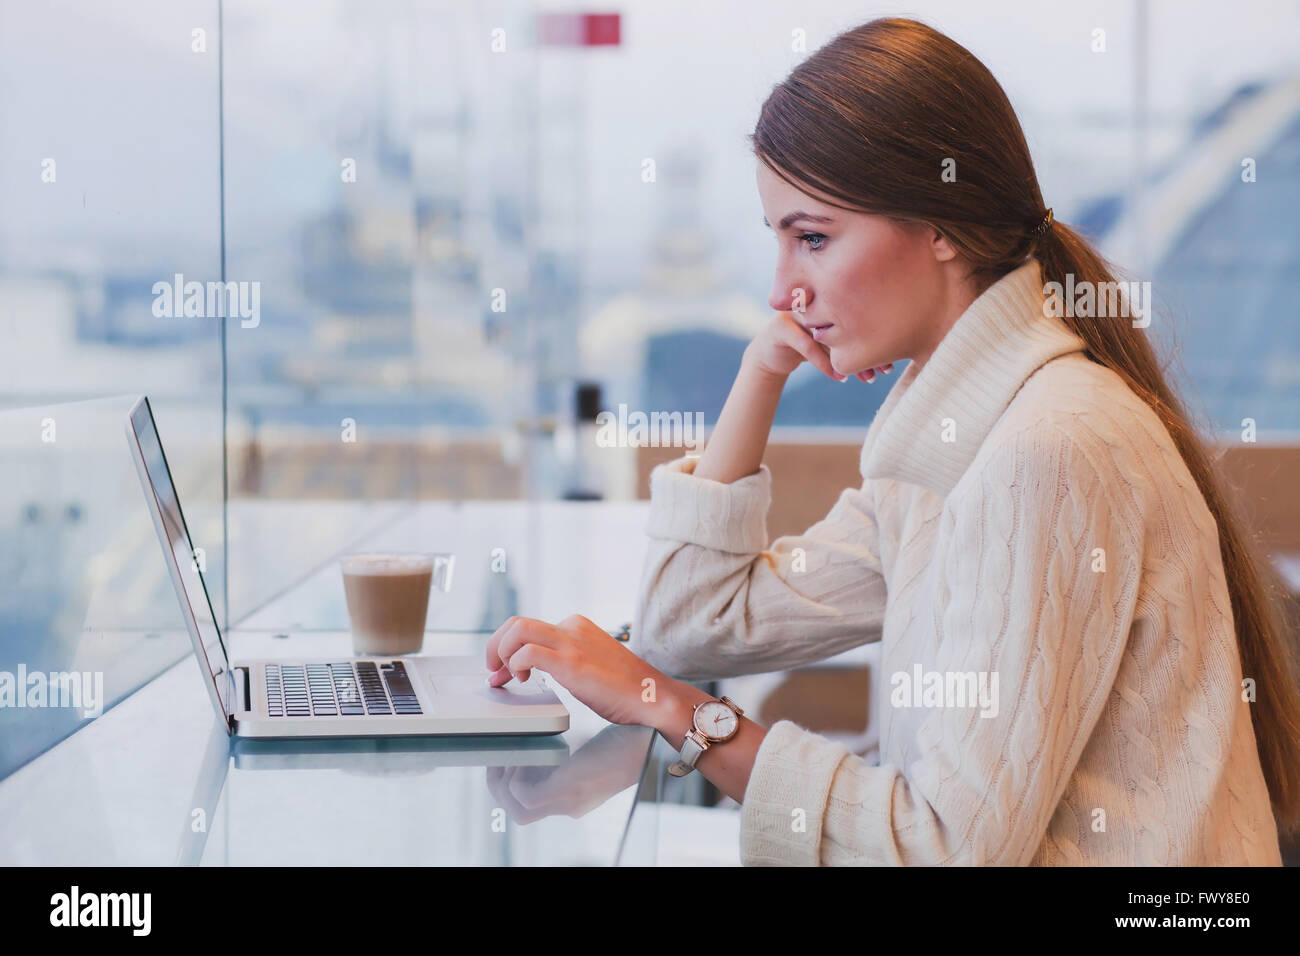 Frau mit Laptop im modernen Café innen, kostenloses Wifi, Abrufen von e-Mails Stockfoto